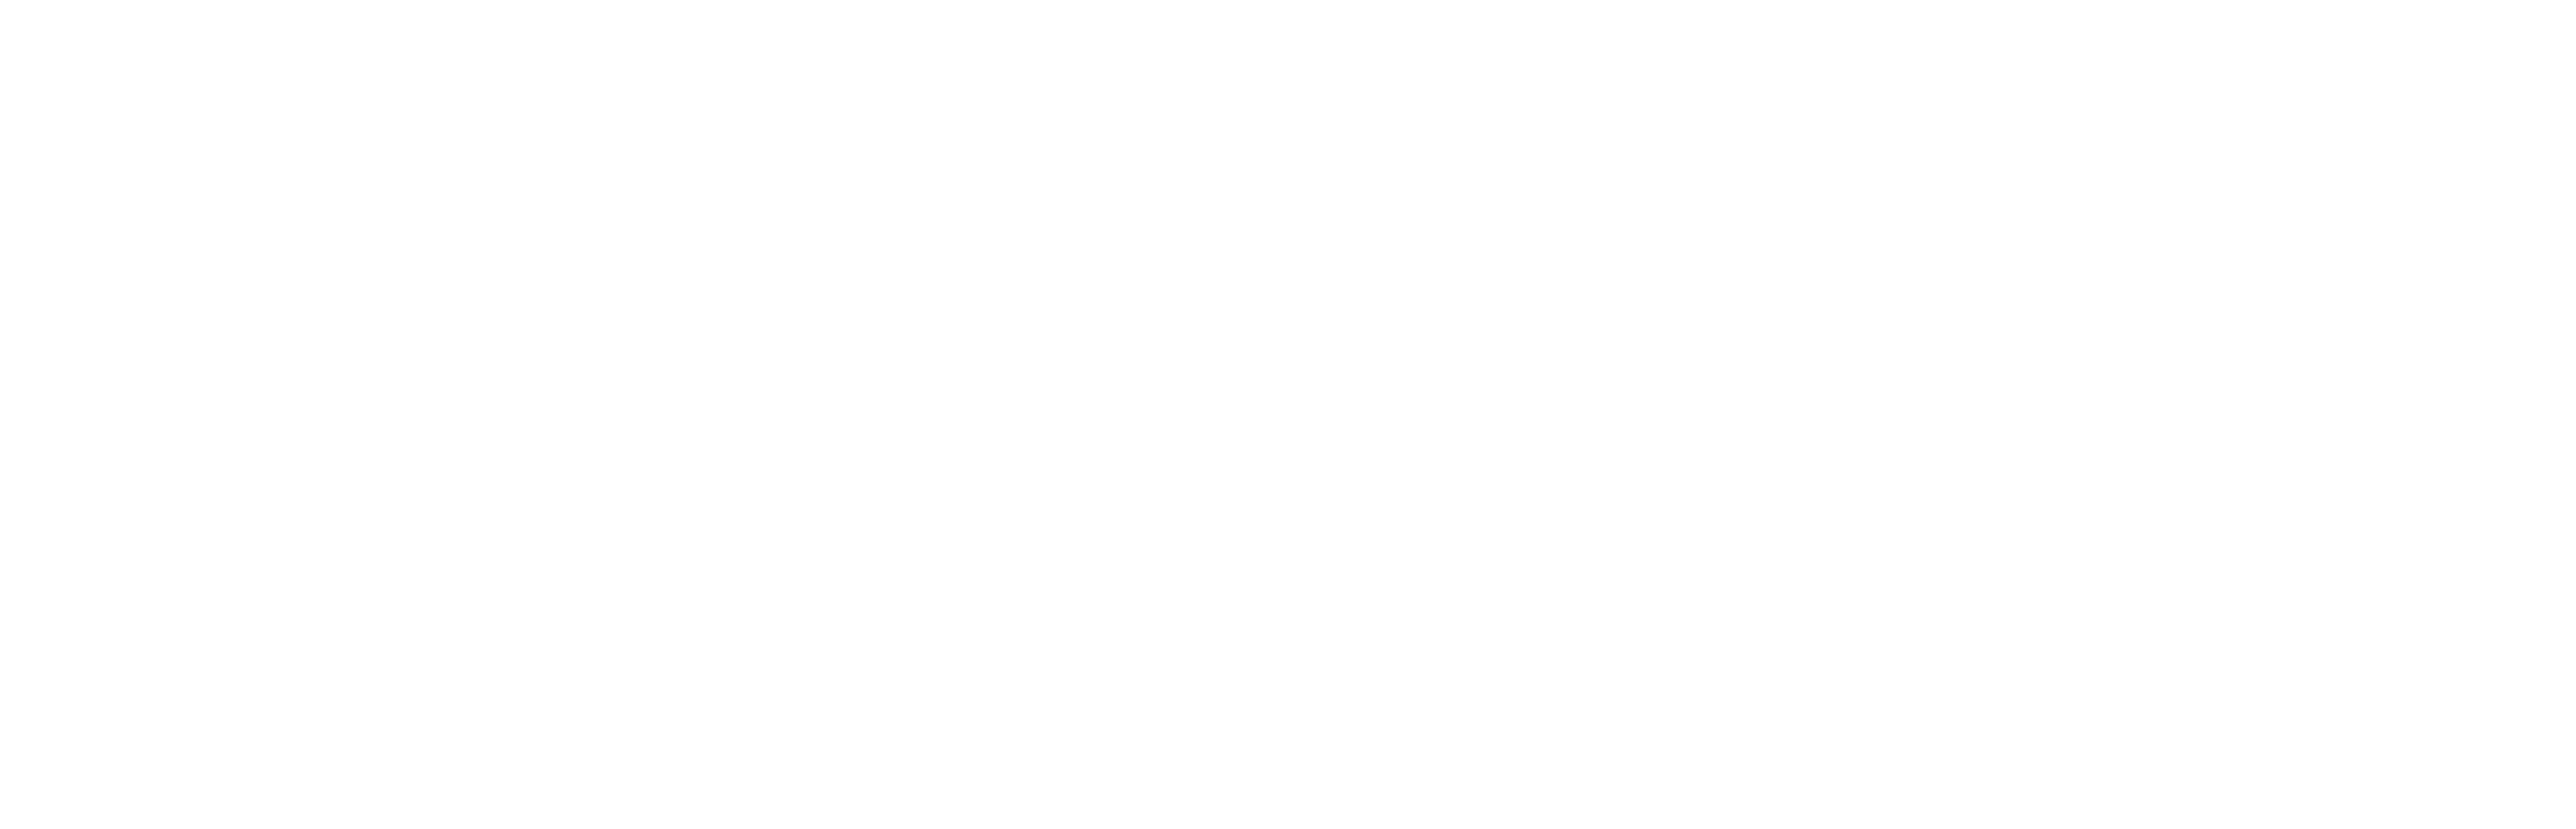 https://www.saastock.com/wp-content/uploads/2020/08/nubox-logo.png